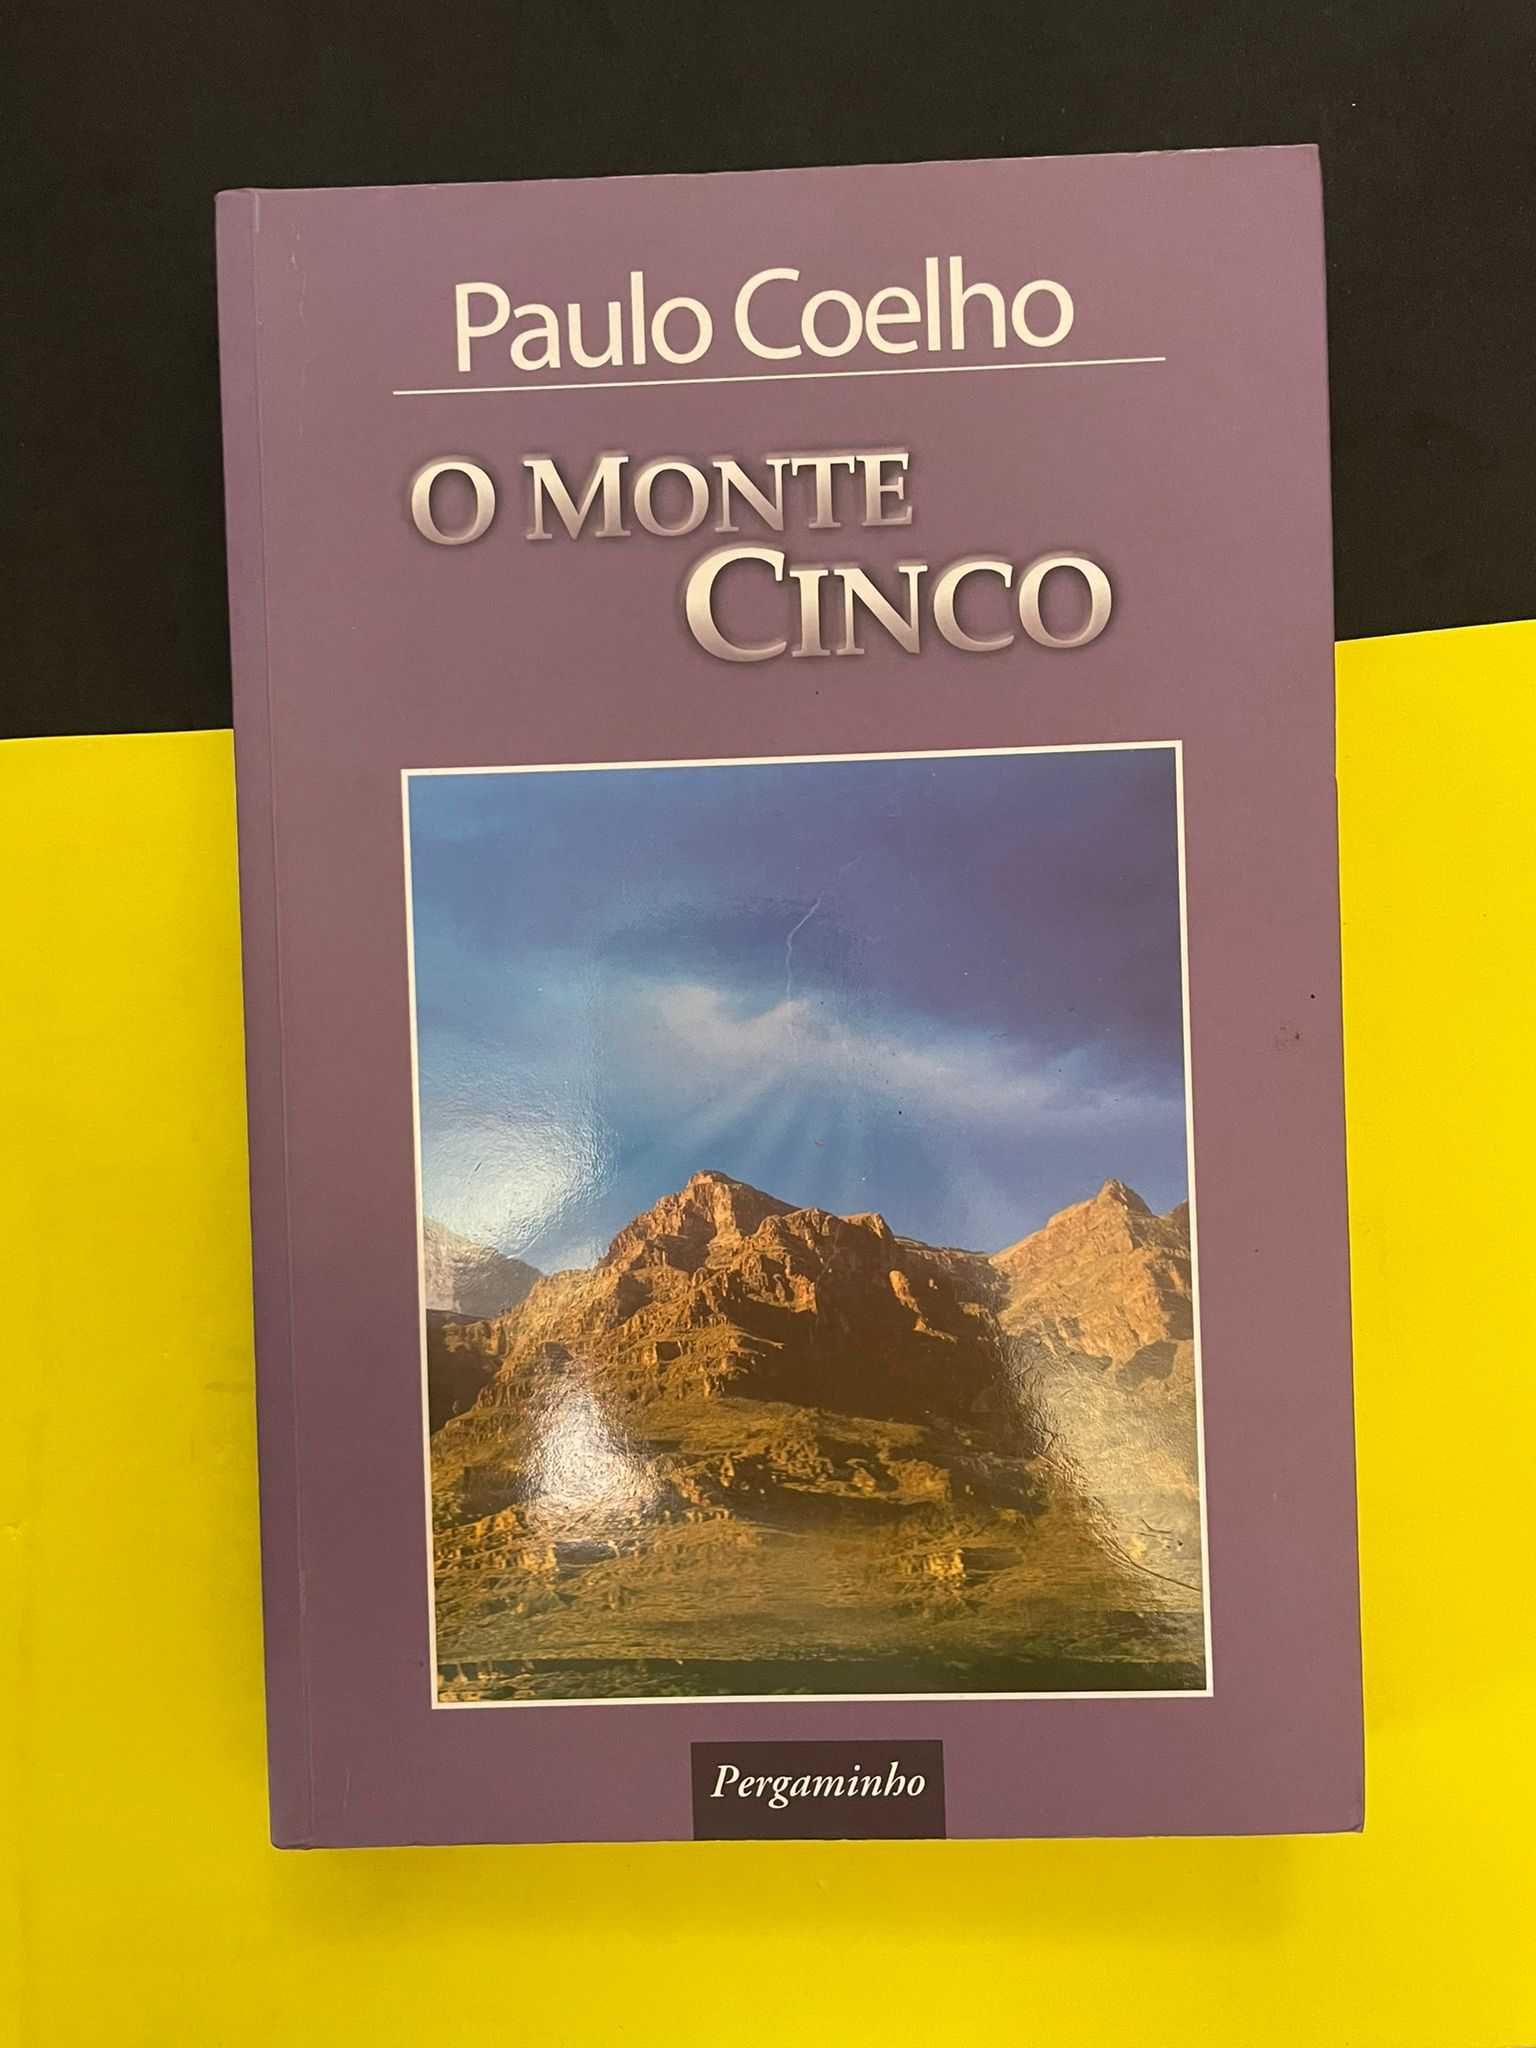 Paulo Coelho - O Monte Cinco